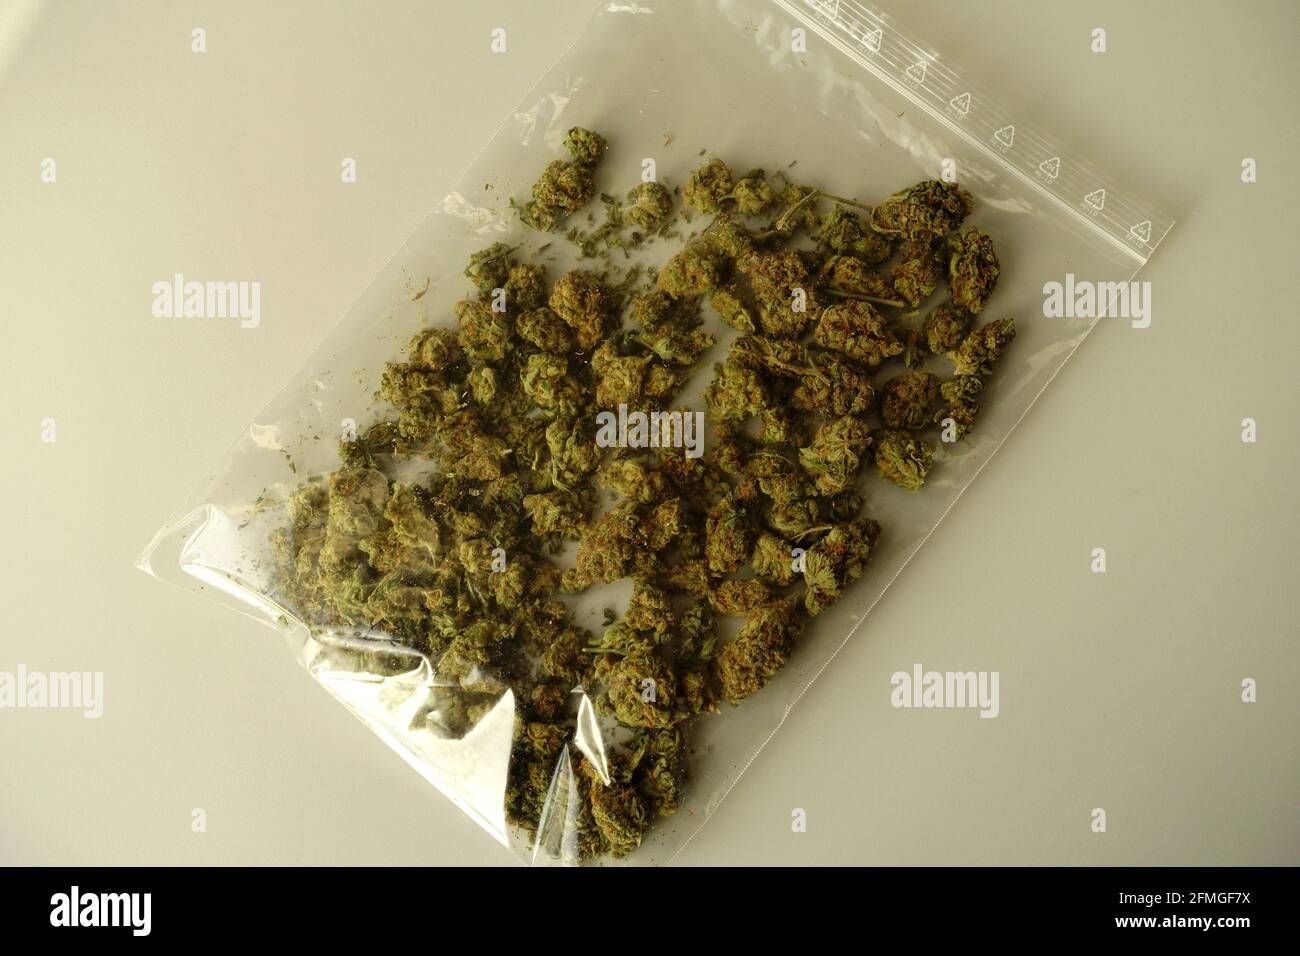 https://c8.alamy.com/compes/2fmgf7x/marihuana-brotes-de-flores-secas-en-una-bolsa-de-plastico-2fmgf7x.jpg